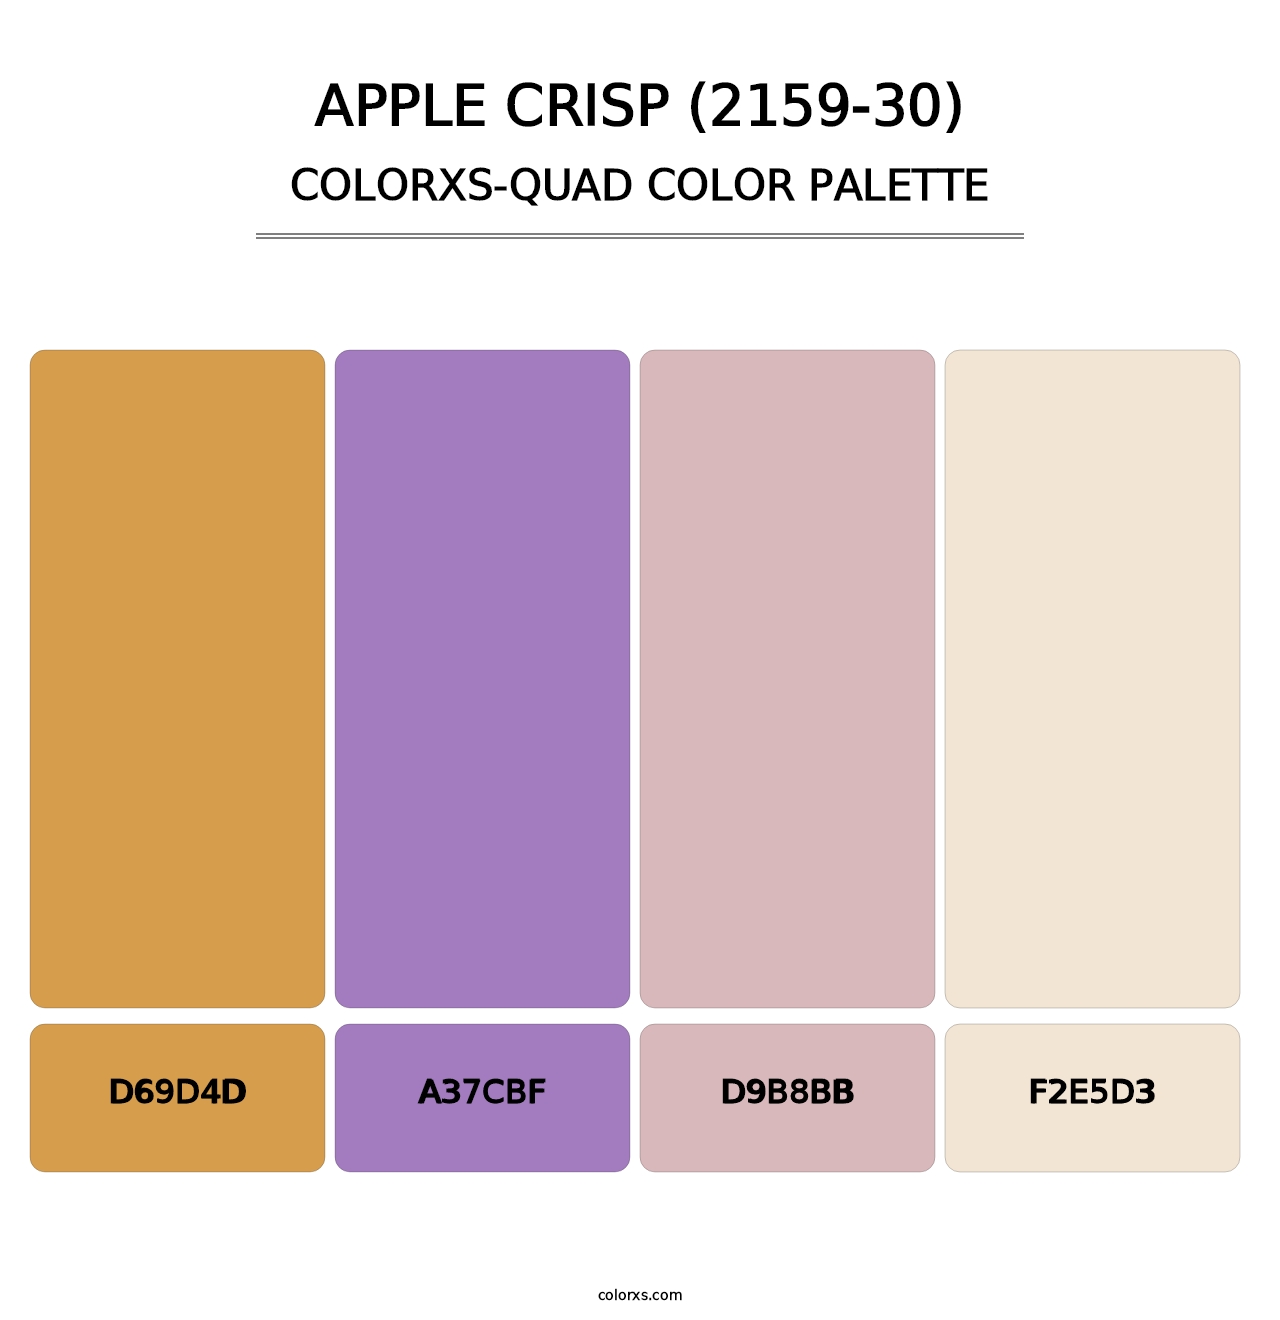 Apple Crisp (2159-30) - Colorxs Quad Palette